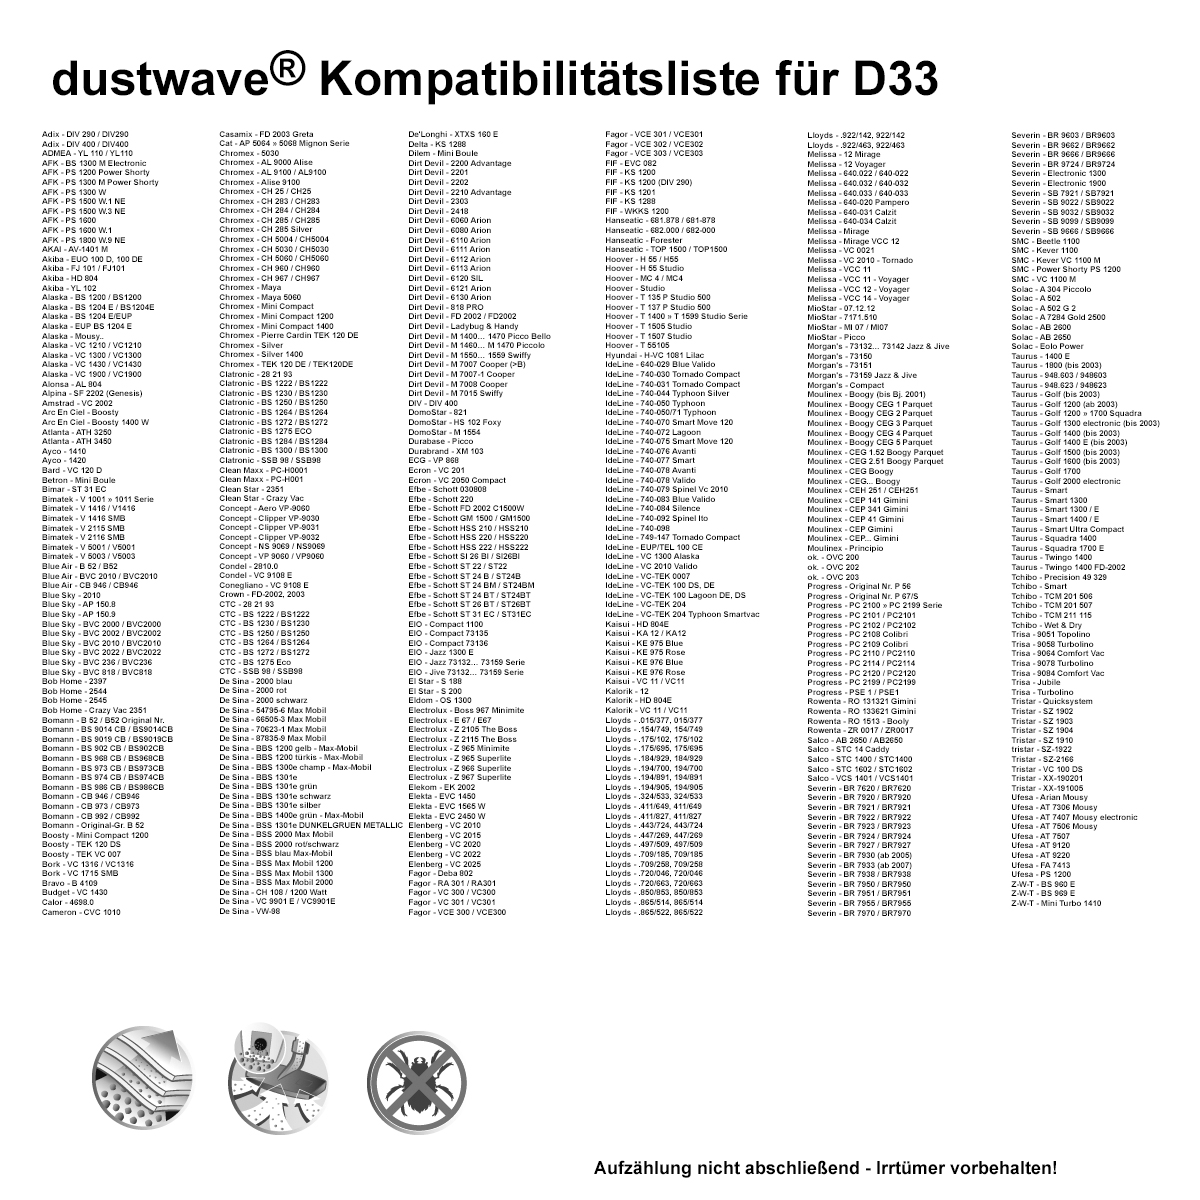 Dustwave® 10 Staubsaugerbeutel für Alpina SF 2202 (Genesis) - hocheffizient, mehrlagiges Mikrovlies mit Hygieneverschluss - Made in Germany